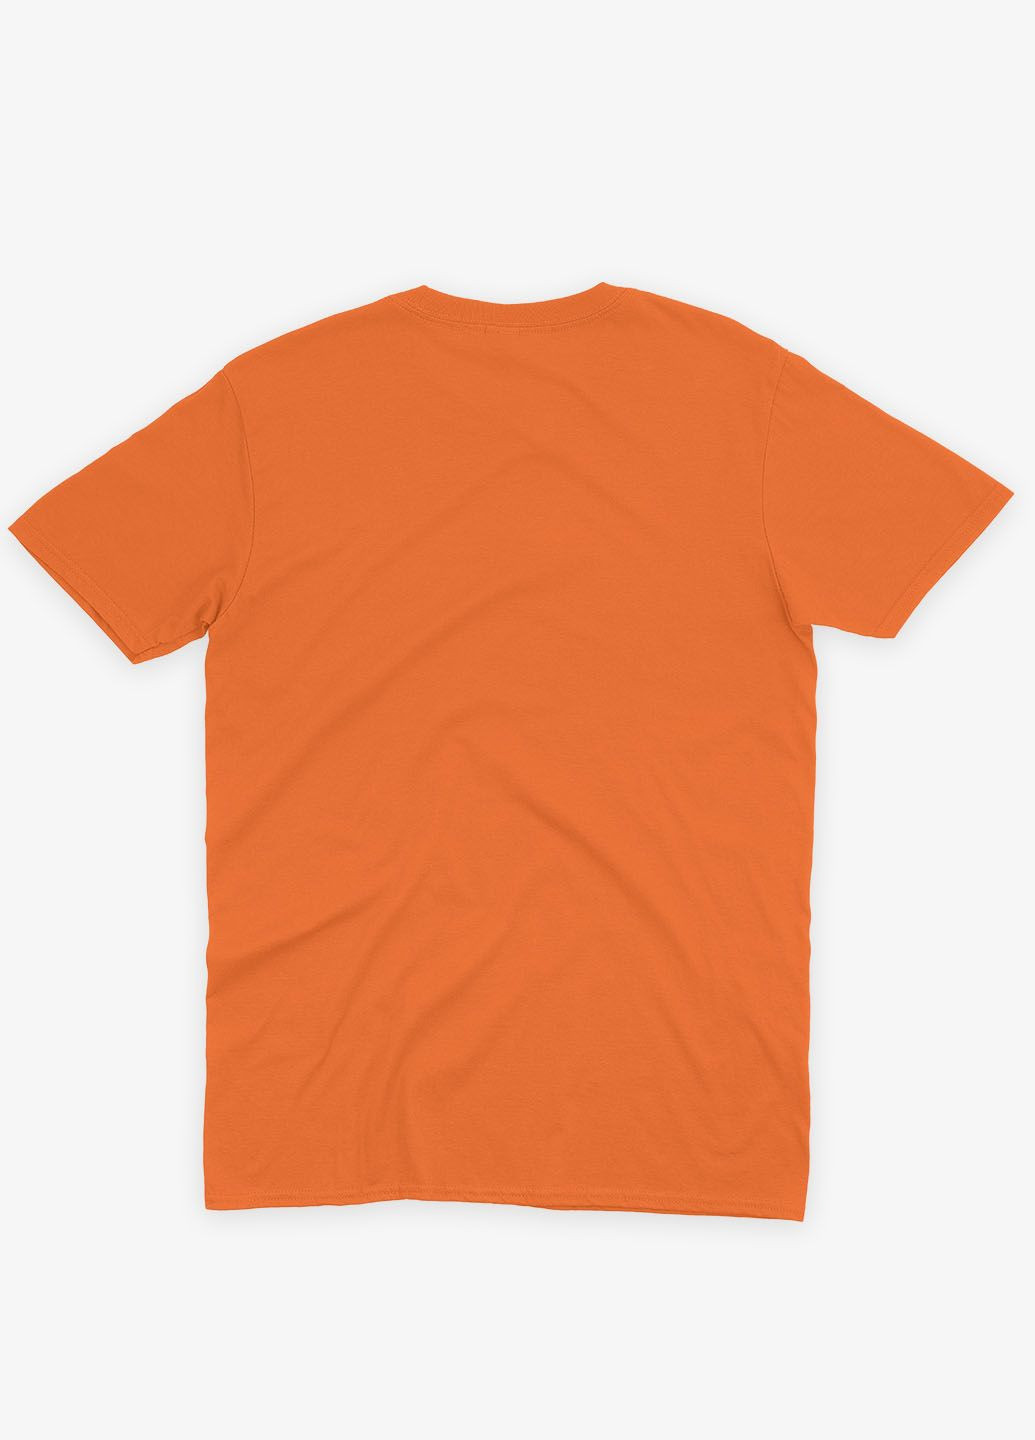 Оранжевая демисезонная футболка для девочки с принтом супергероя - черная пантера (ts001-1-ora-006-027-002-g) Modno